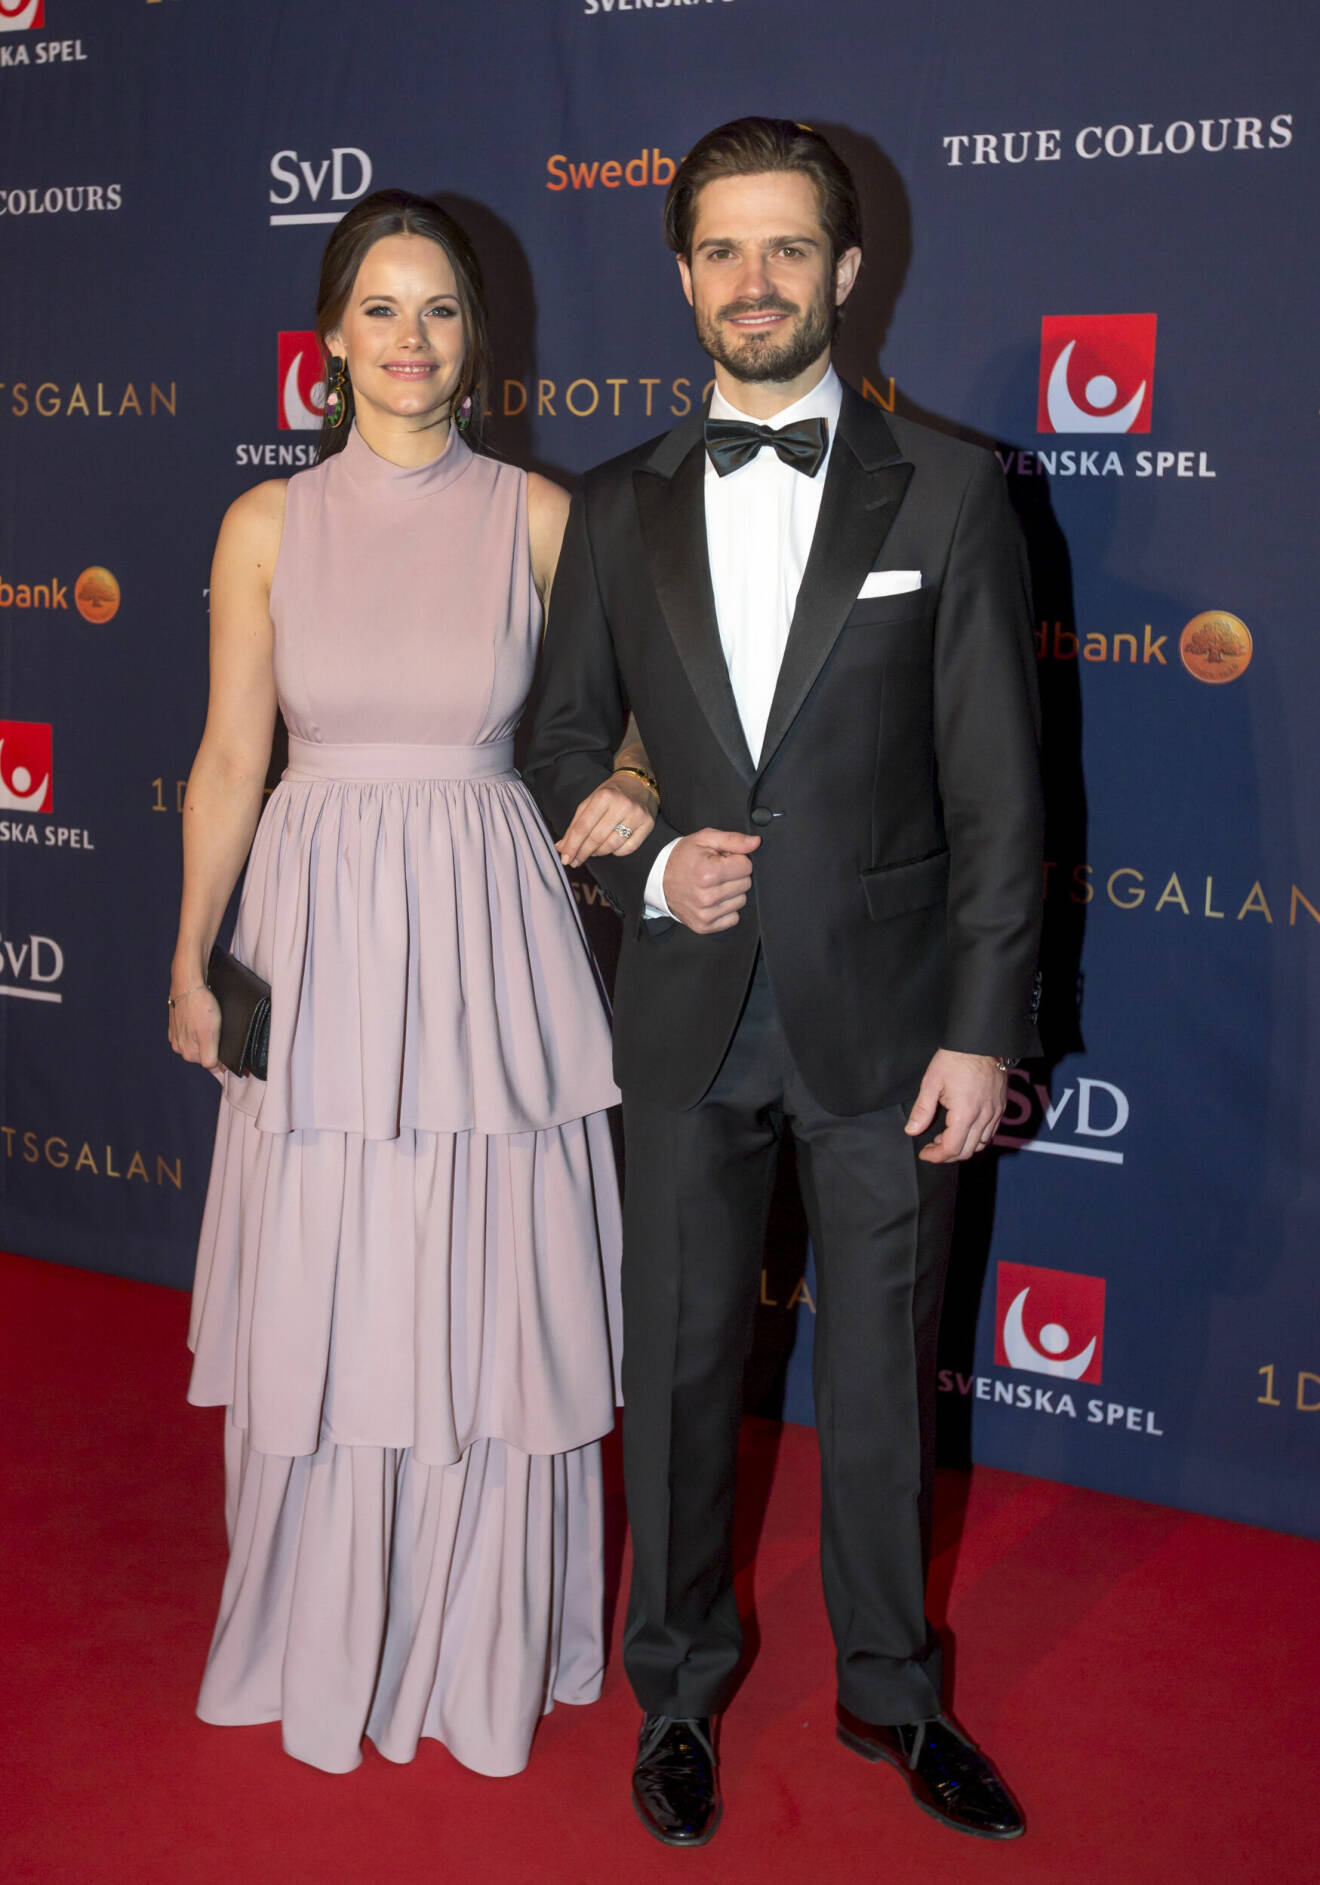 Prinsessan Sofia och prins Carl Philip på Idrottsgalan 2018